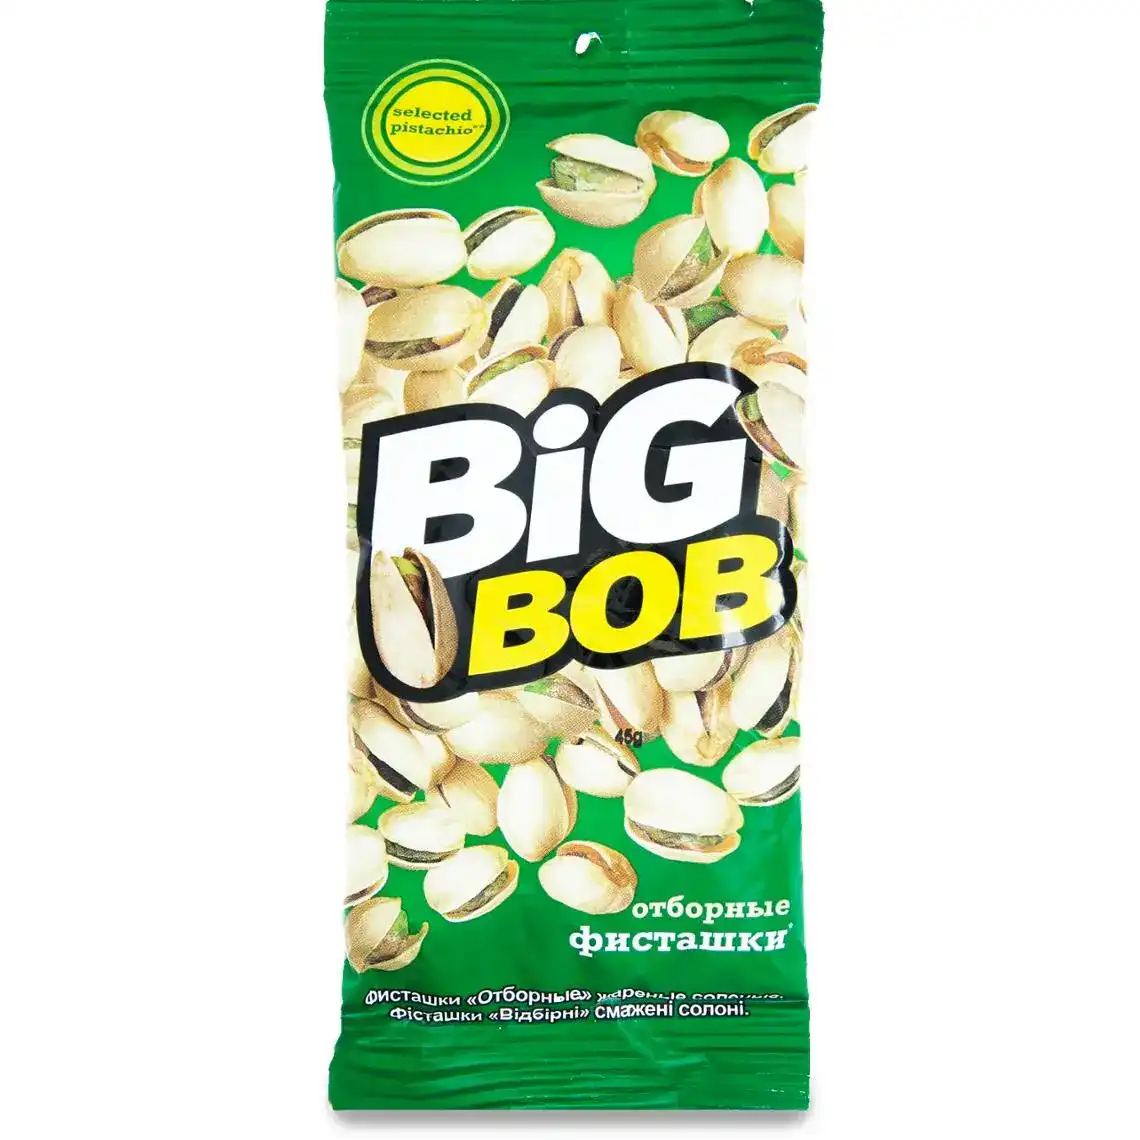 Фісташки Big Bob відбірні смажені солоні 45 г